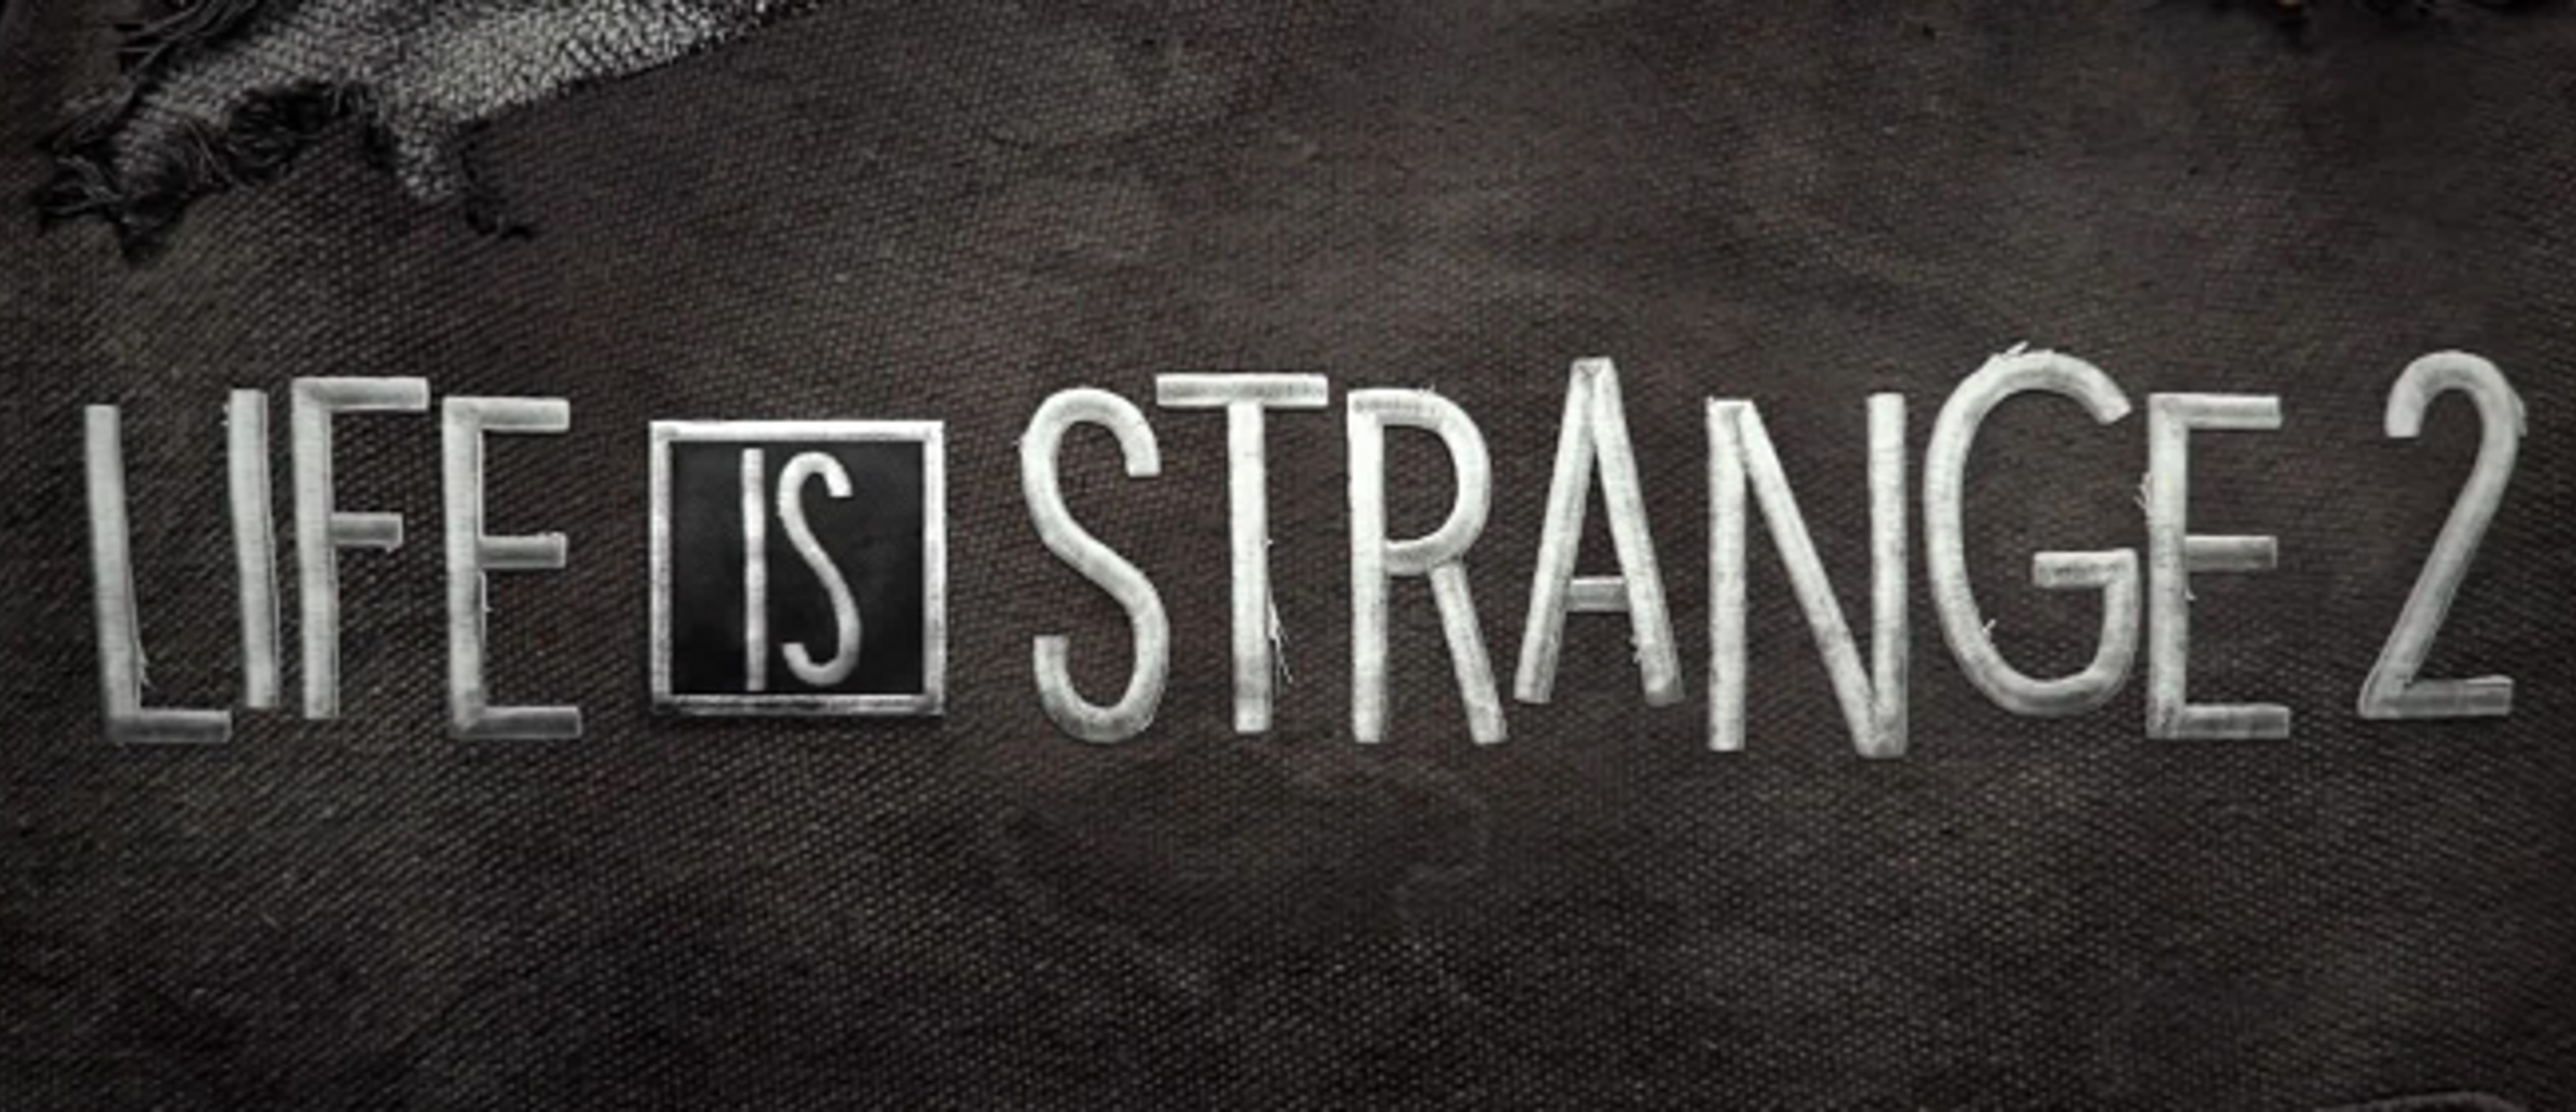 Life is life. Life Strange 2. Life is Strange 2 эпизод 2. Life is Strange 2 логотип. Life is Strange 2 Постер.